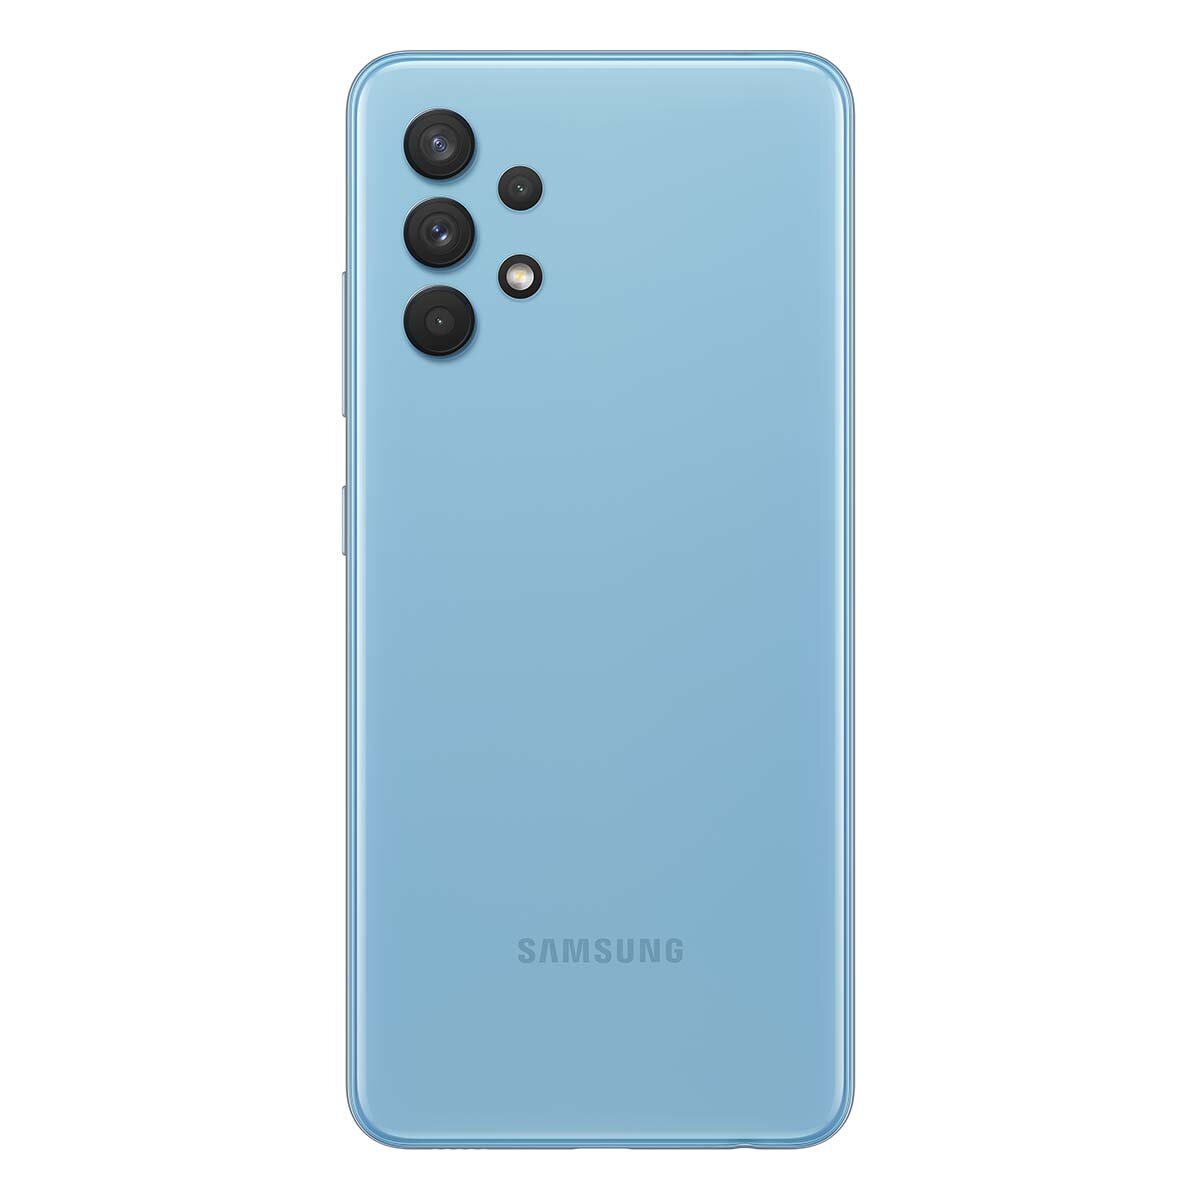 Samsung Galaxy A32 Color: Azul 128 GB